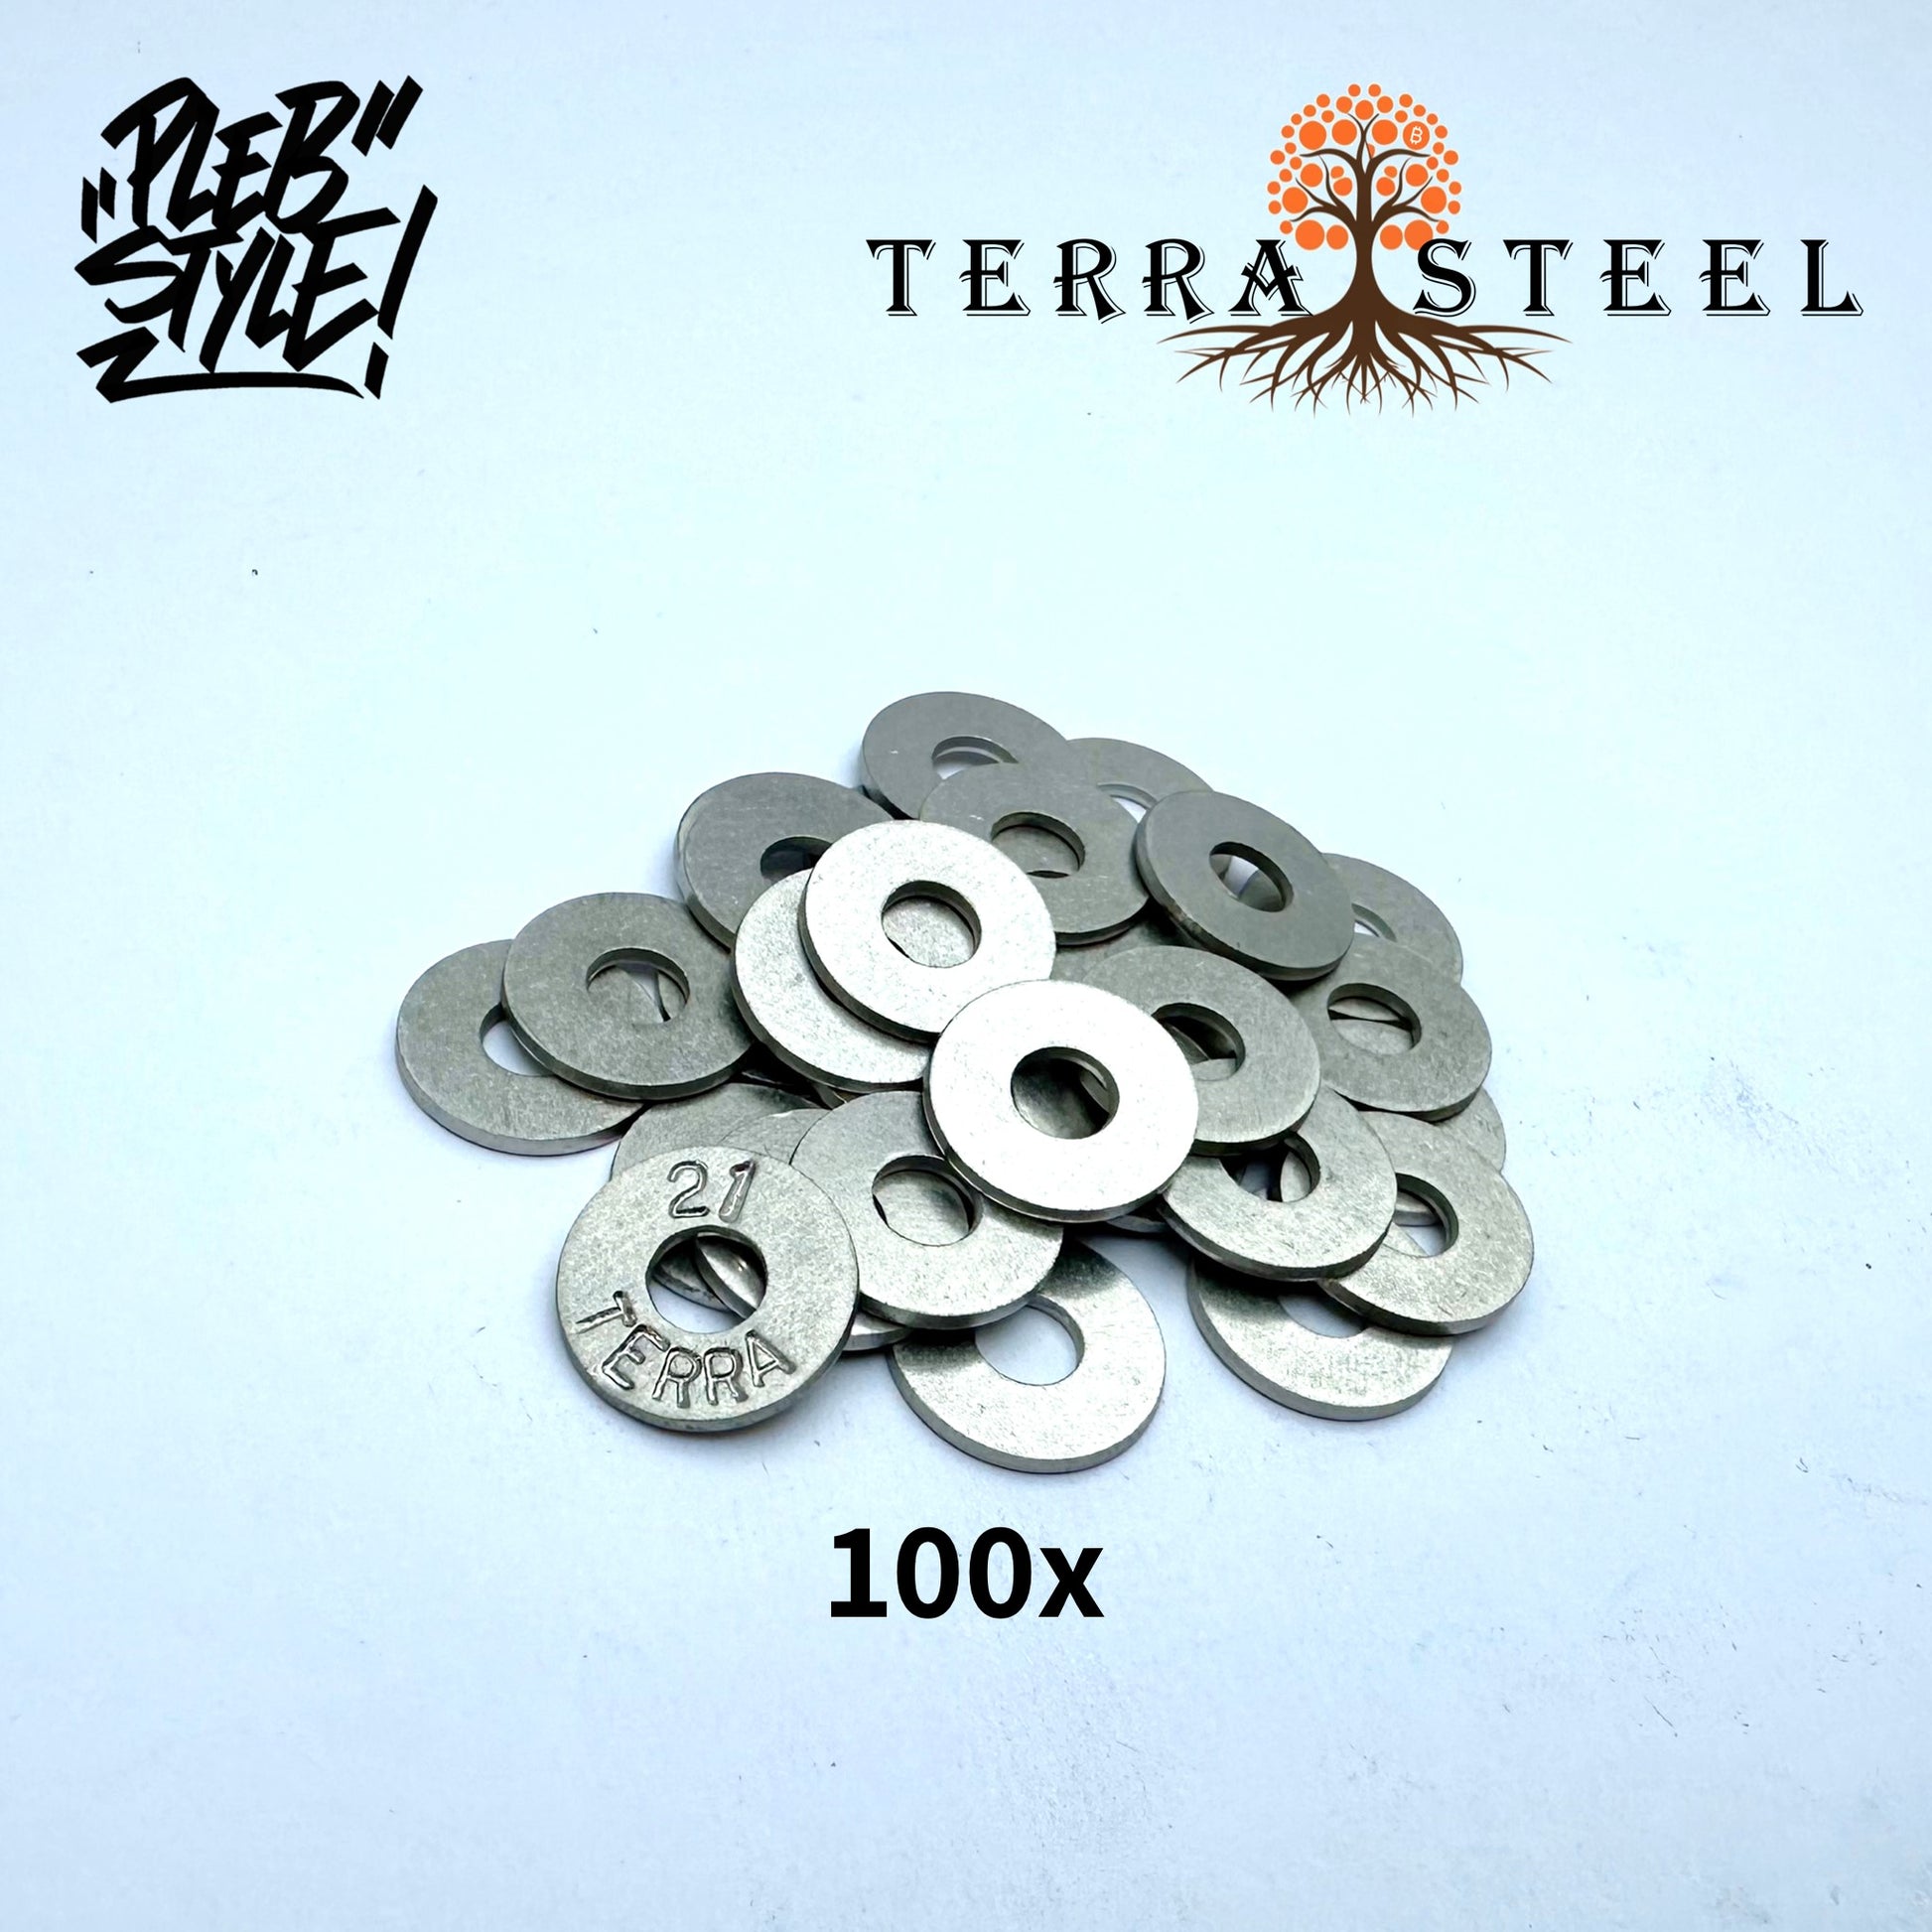 100x Seed Discs for TerraSteel Wallet by Plebstyle